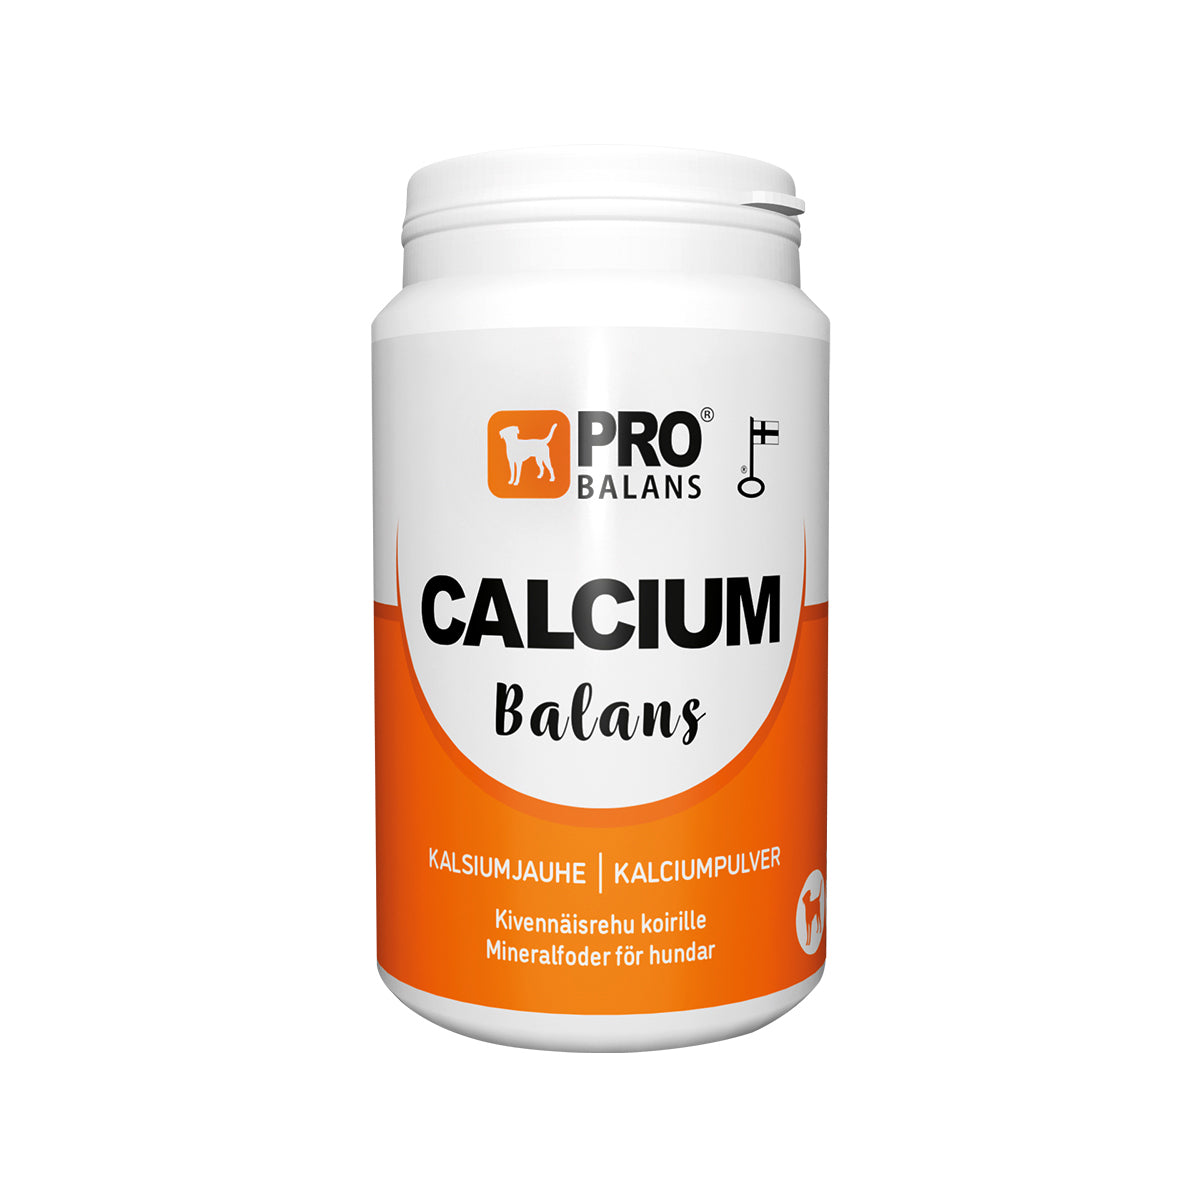 Probalans Calcium Balans - Kalsiumjauhe koirille 250 g